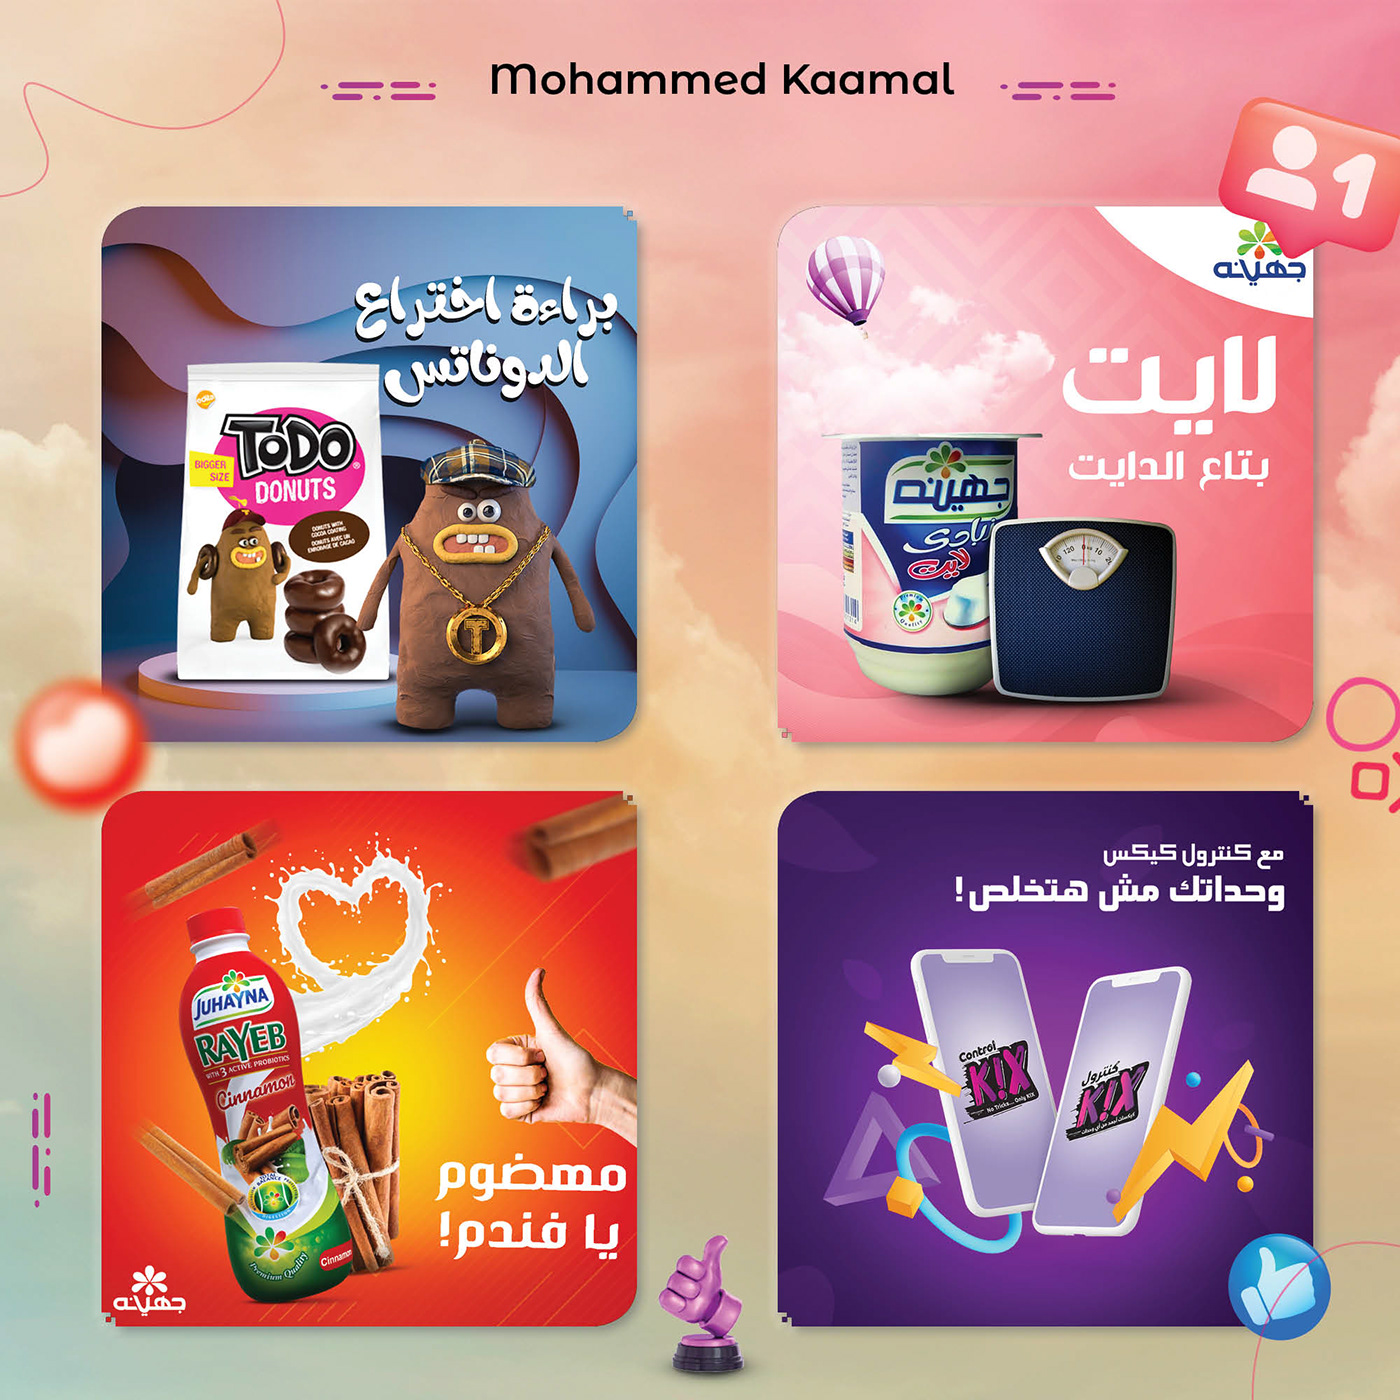 this 4 social media design by designer mohammed kaamal